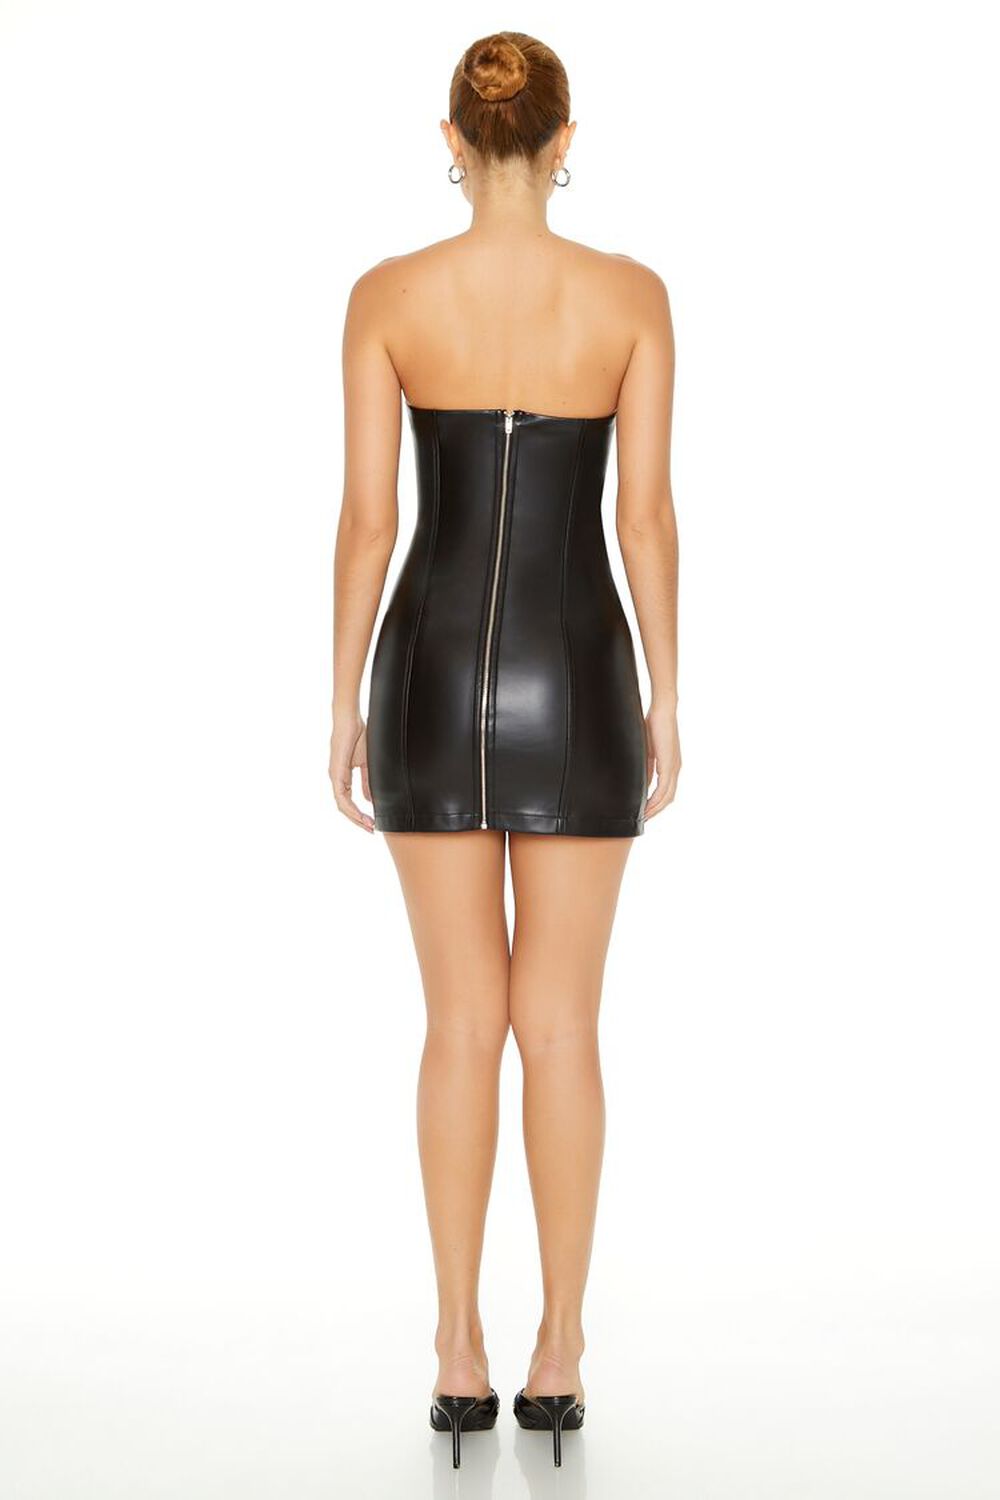 BLACK Faux Leather Mini Tube Dress, image 3